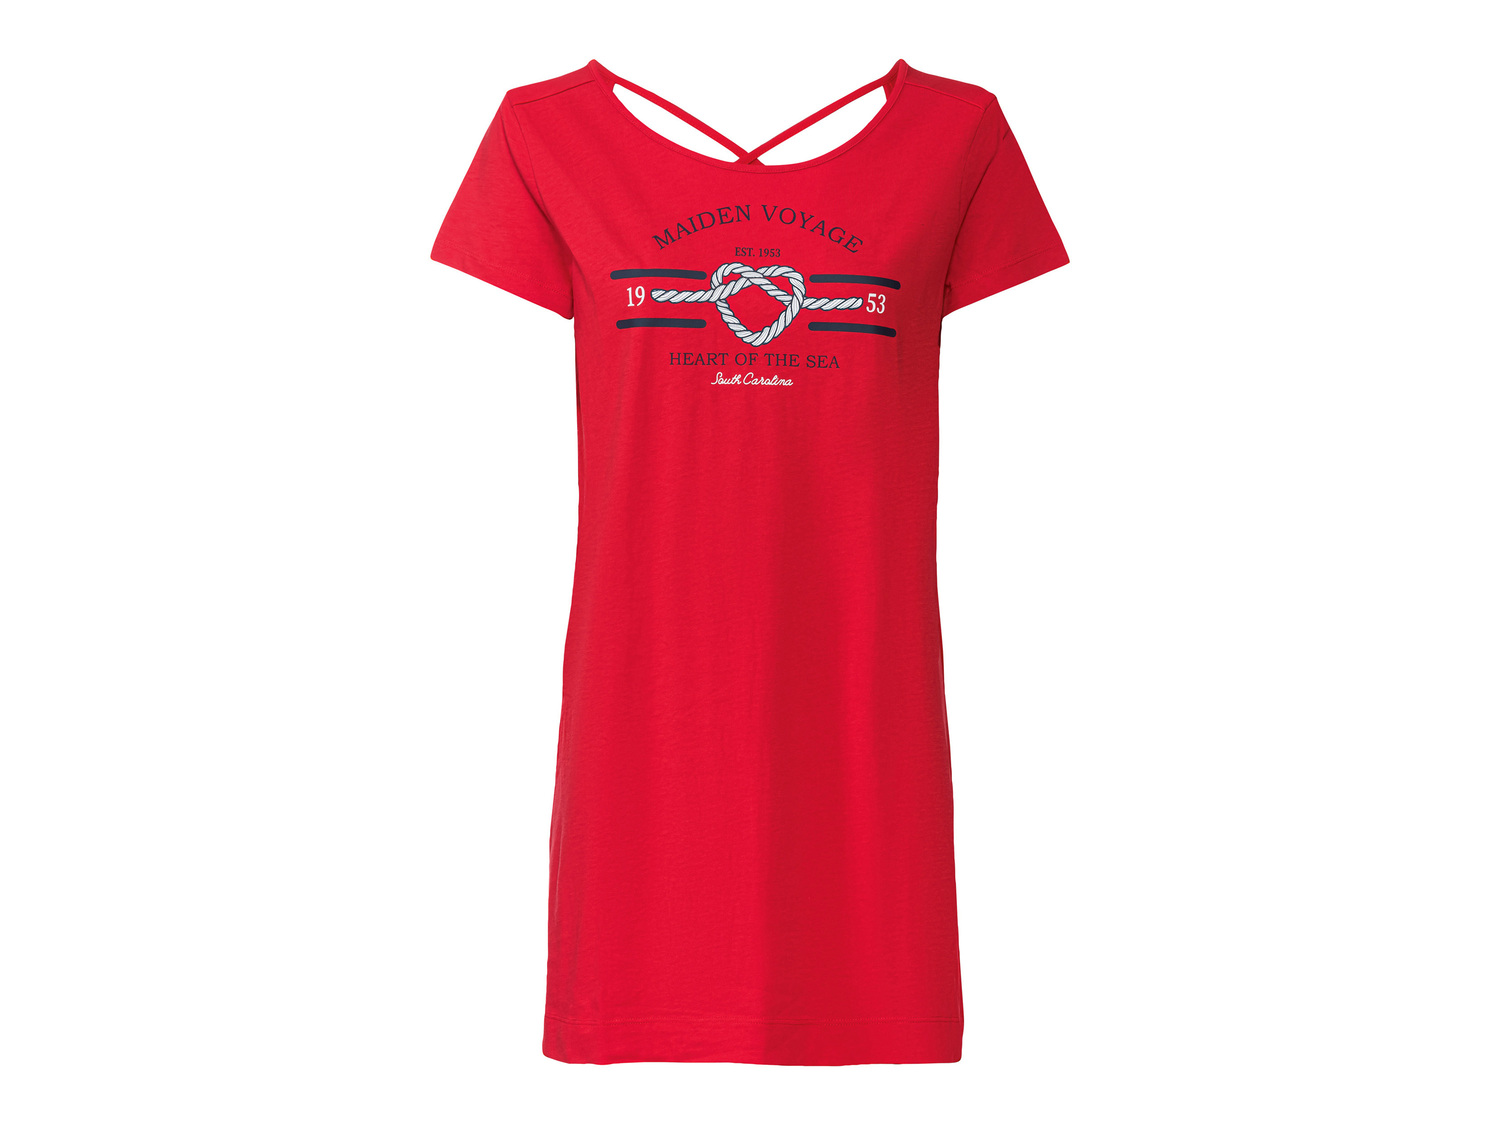 T-shirt lunga da donna Esmara, prezzo 4.99 &#8364; 
Misure: S-L 
- Puro cotone
Caratteristiche

- ...